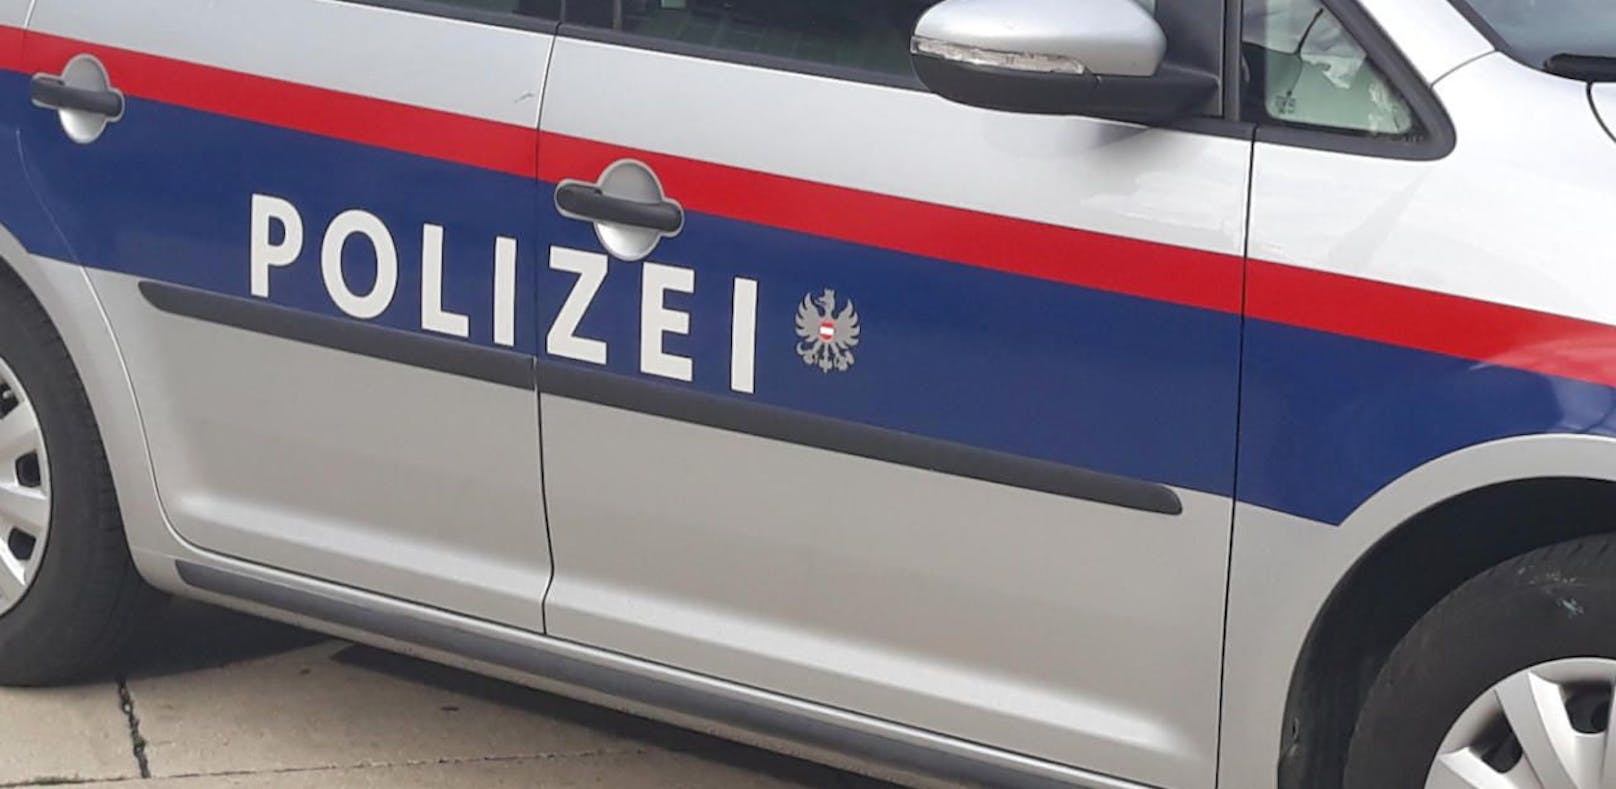 Polizei-Einsatz in Kärnten